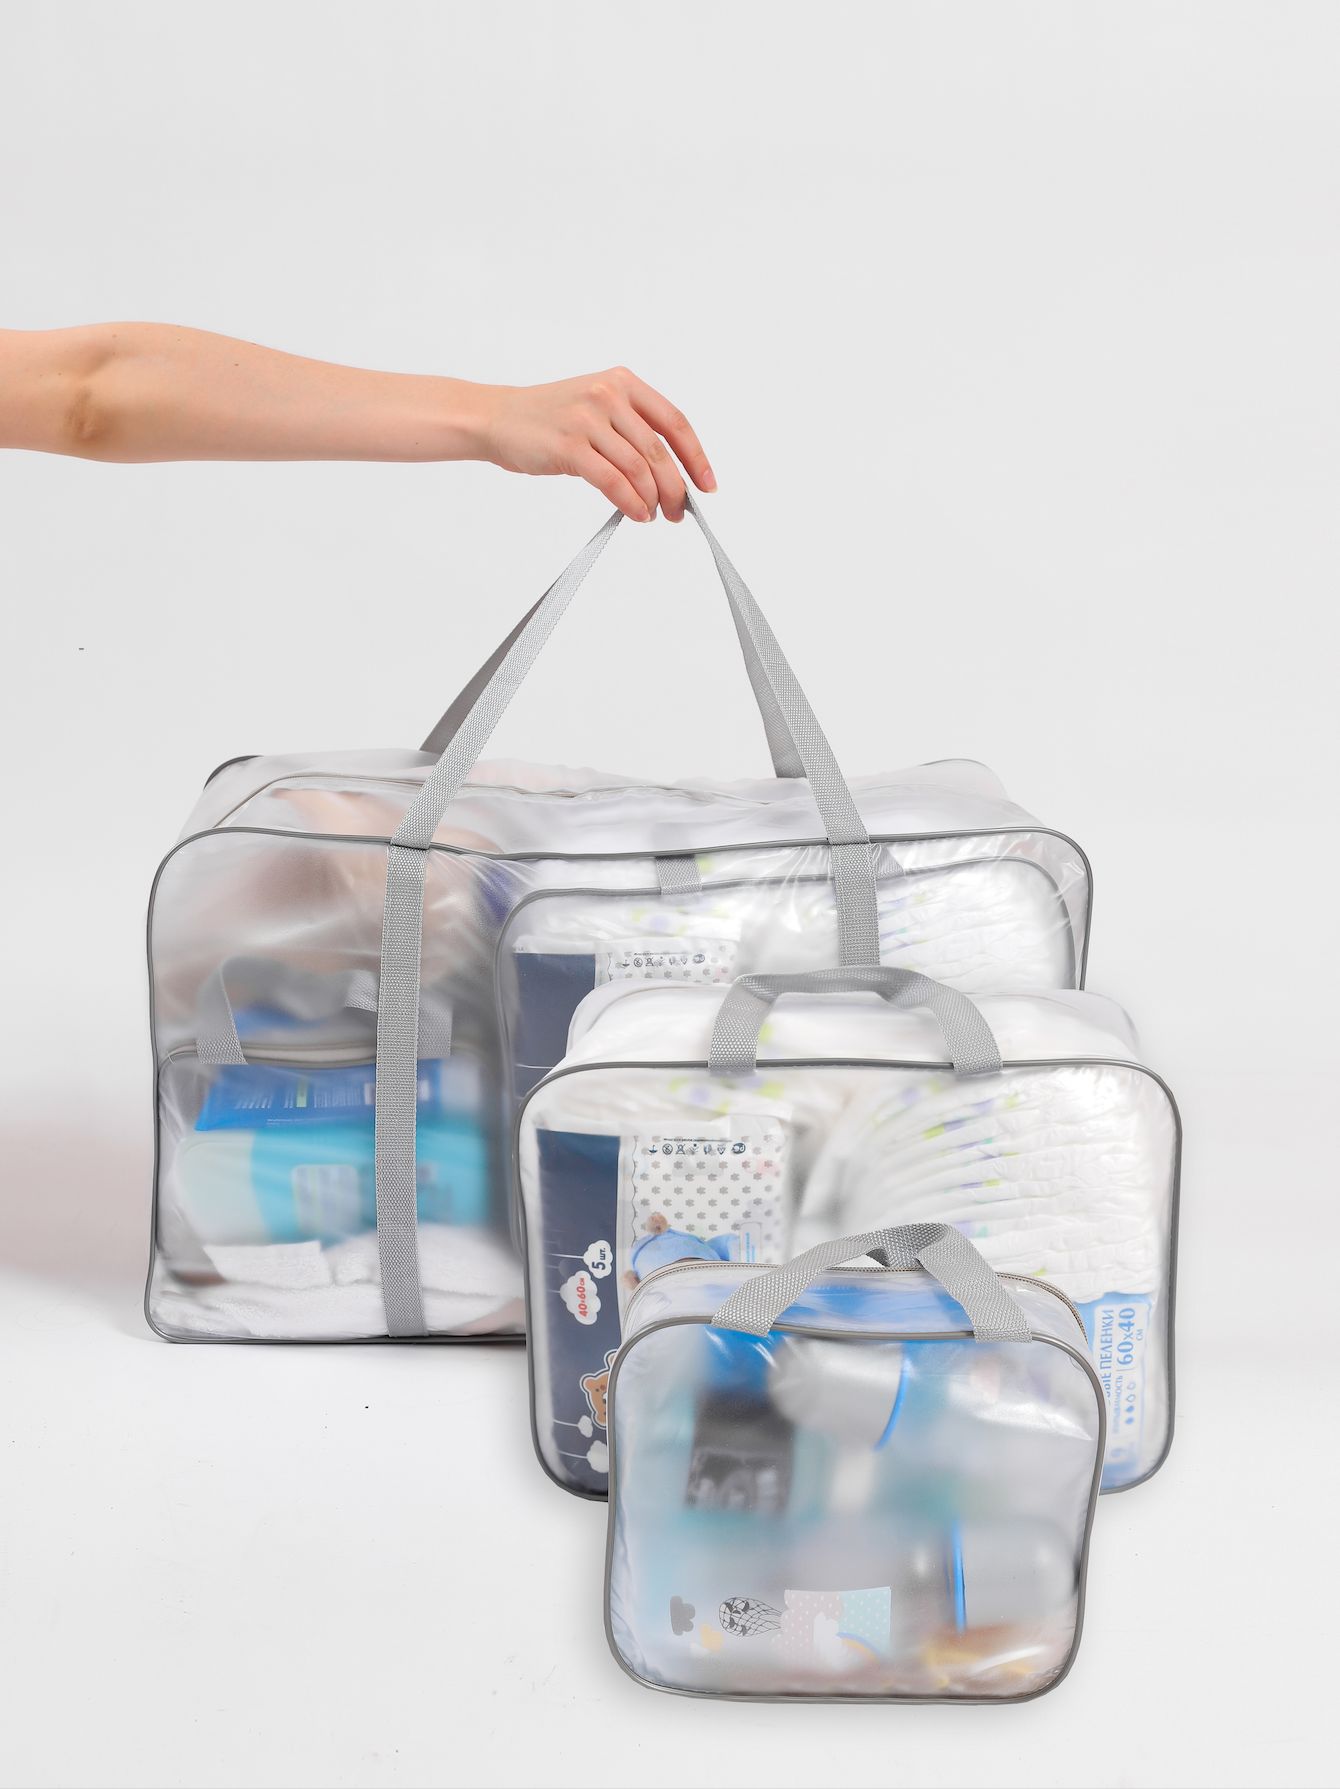 Почему в роддом нужна прозрачная. Прозрачная сумка в роддом. Празрочни сумка для Радом. Сумка для роддома прозрачная с набором. Сумки в роддом прозрачные для беременных.